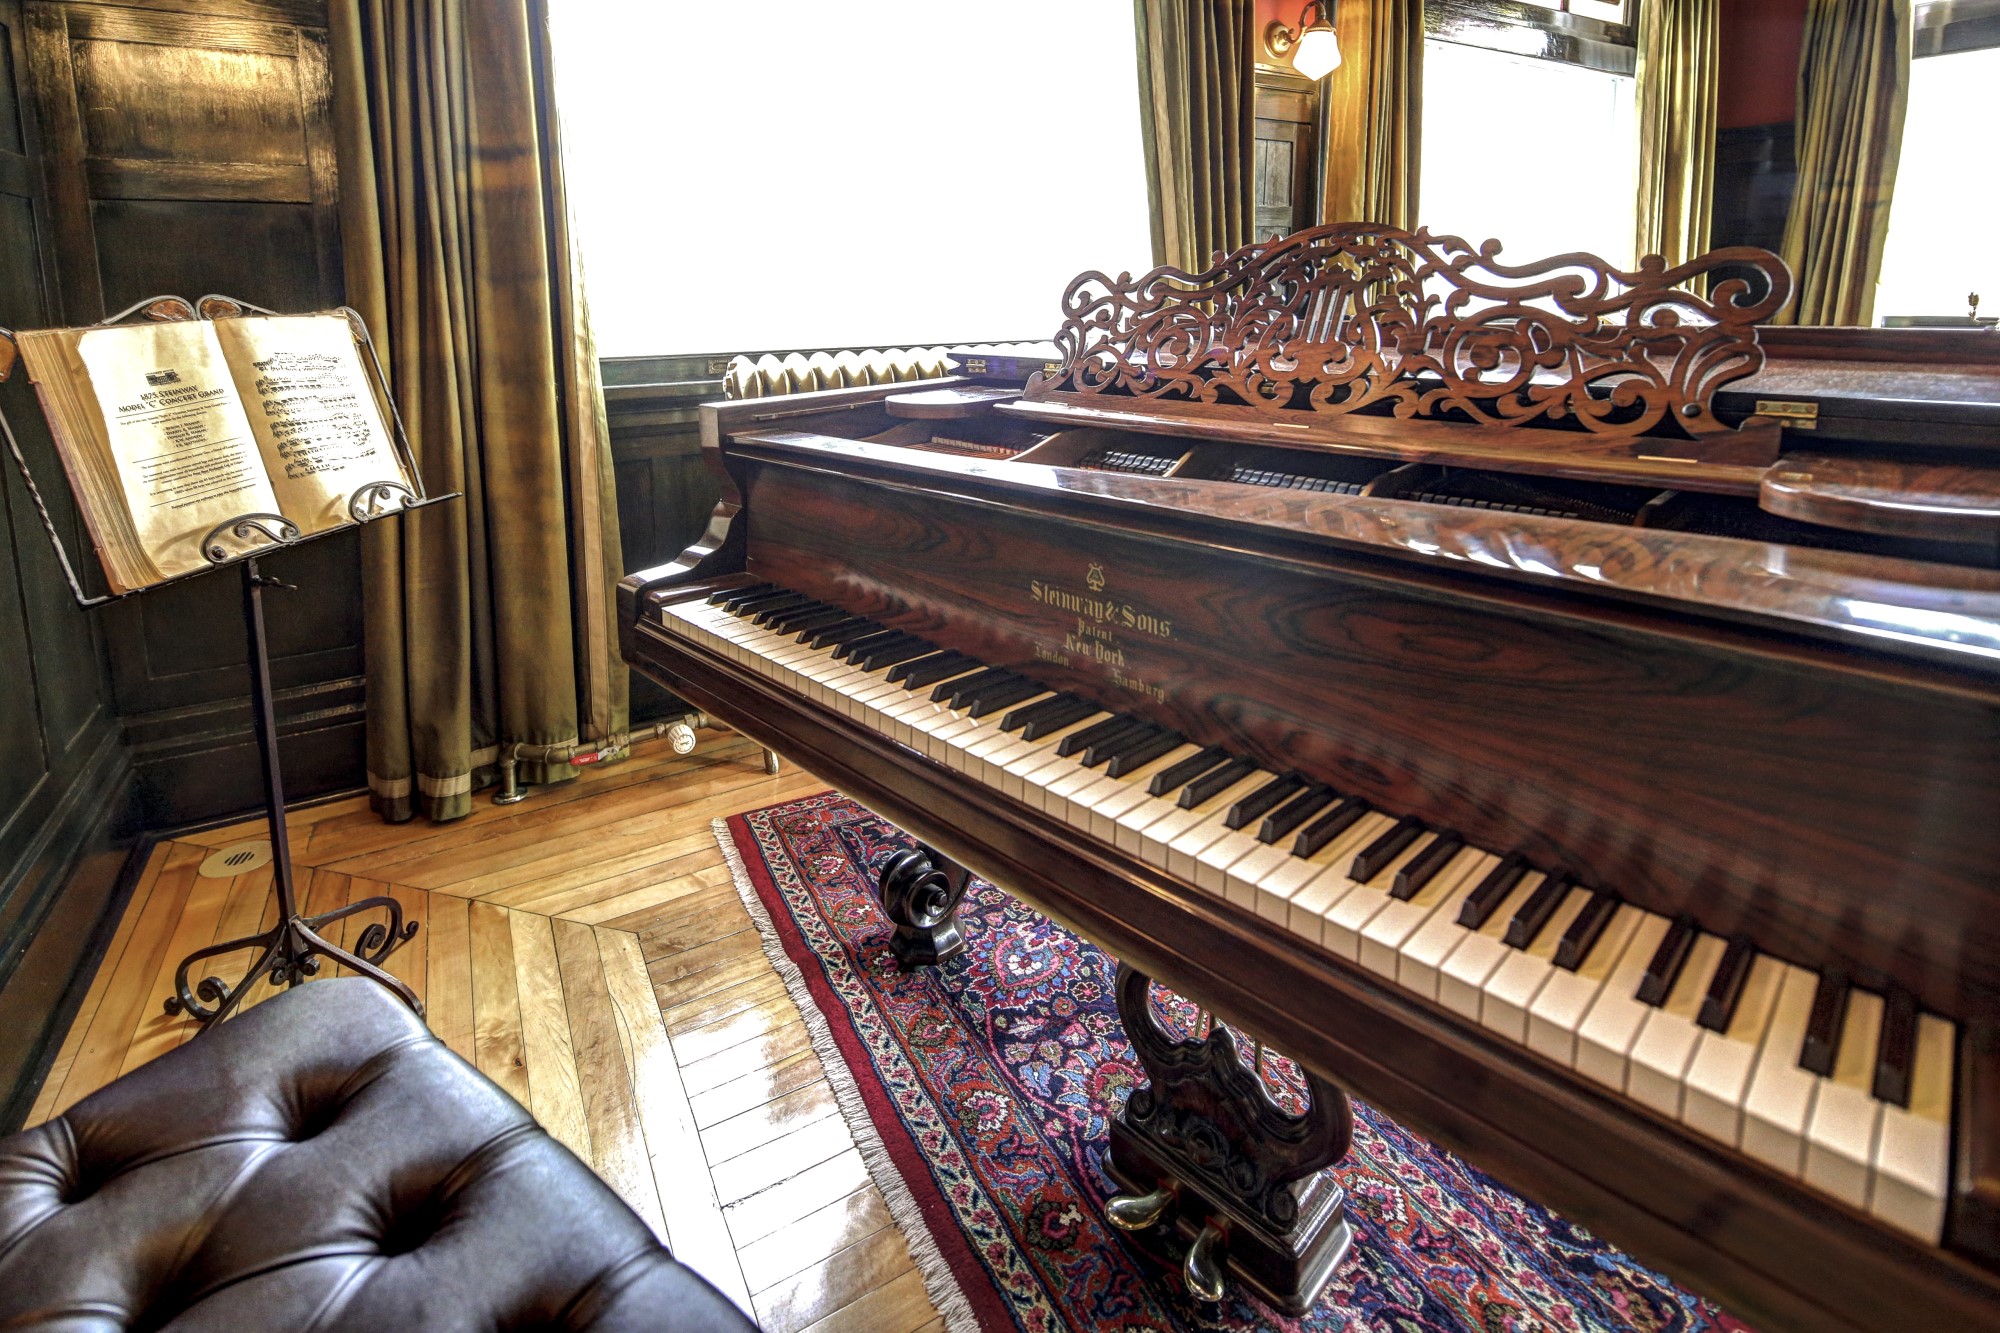 Image 4, Stienway Grand Piano 